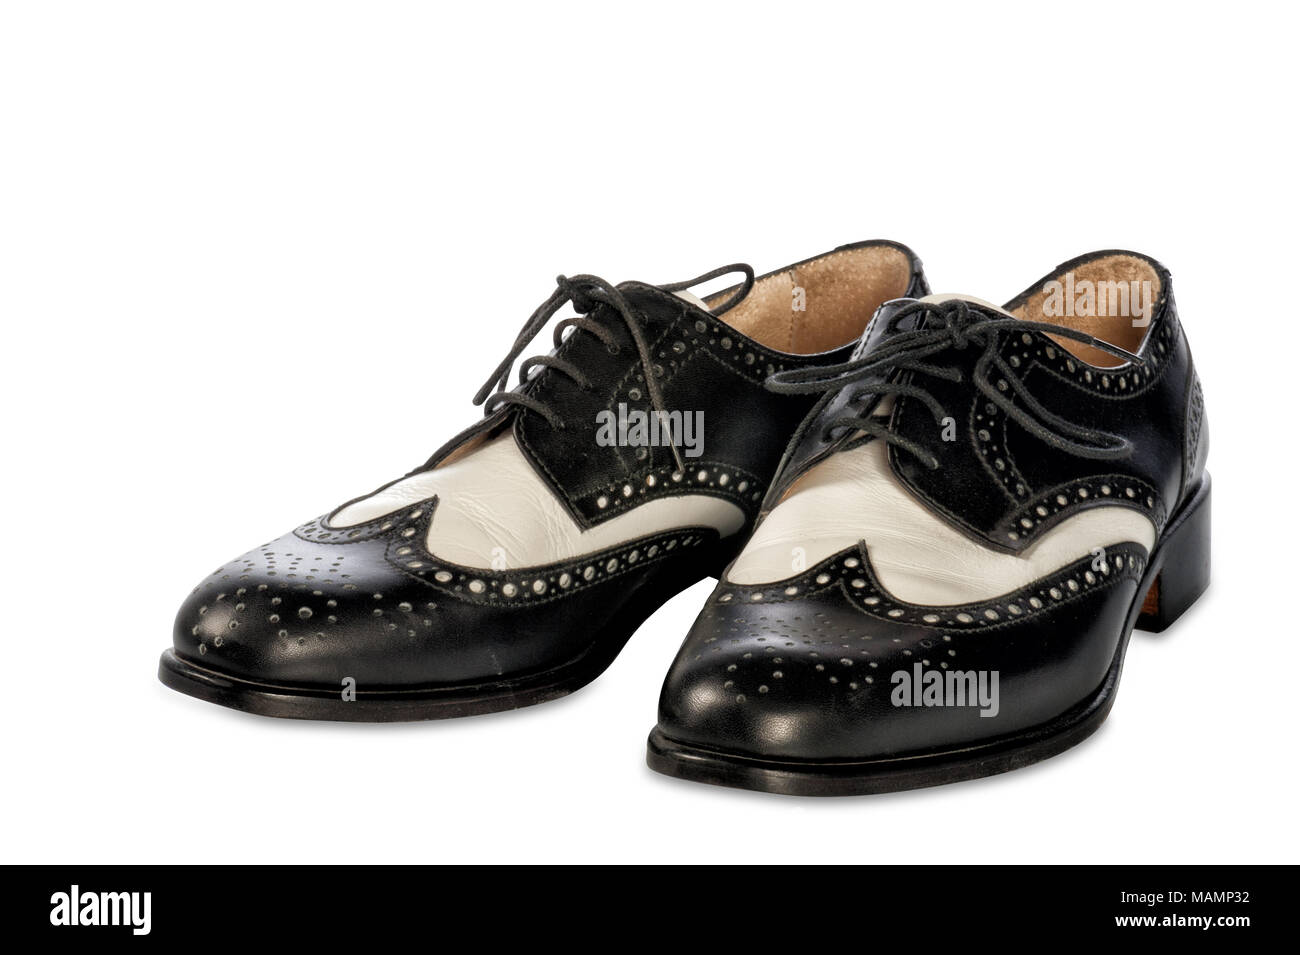 elegant two-tone shoes Stock Photo